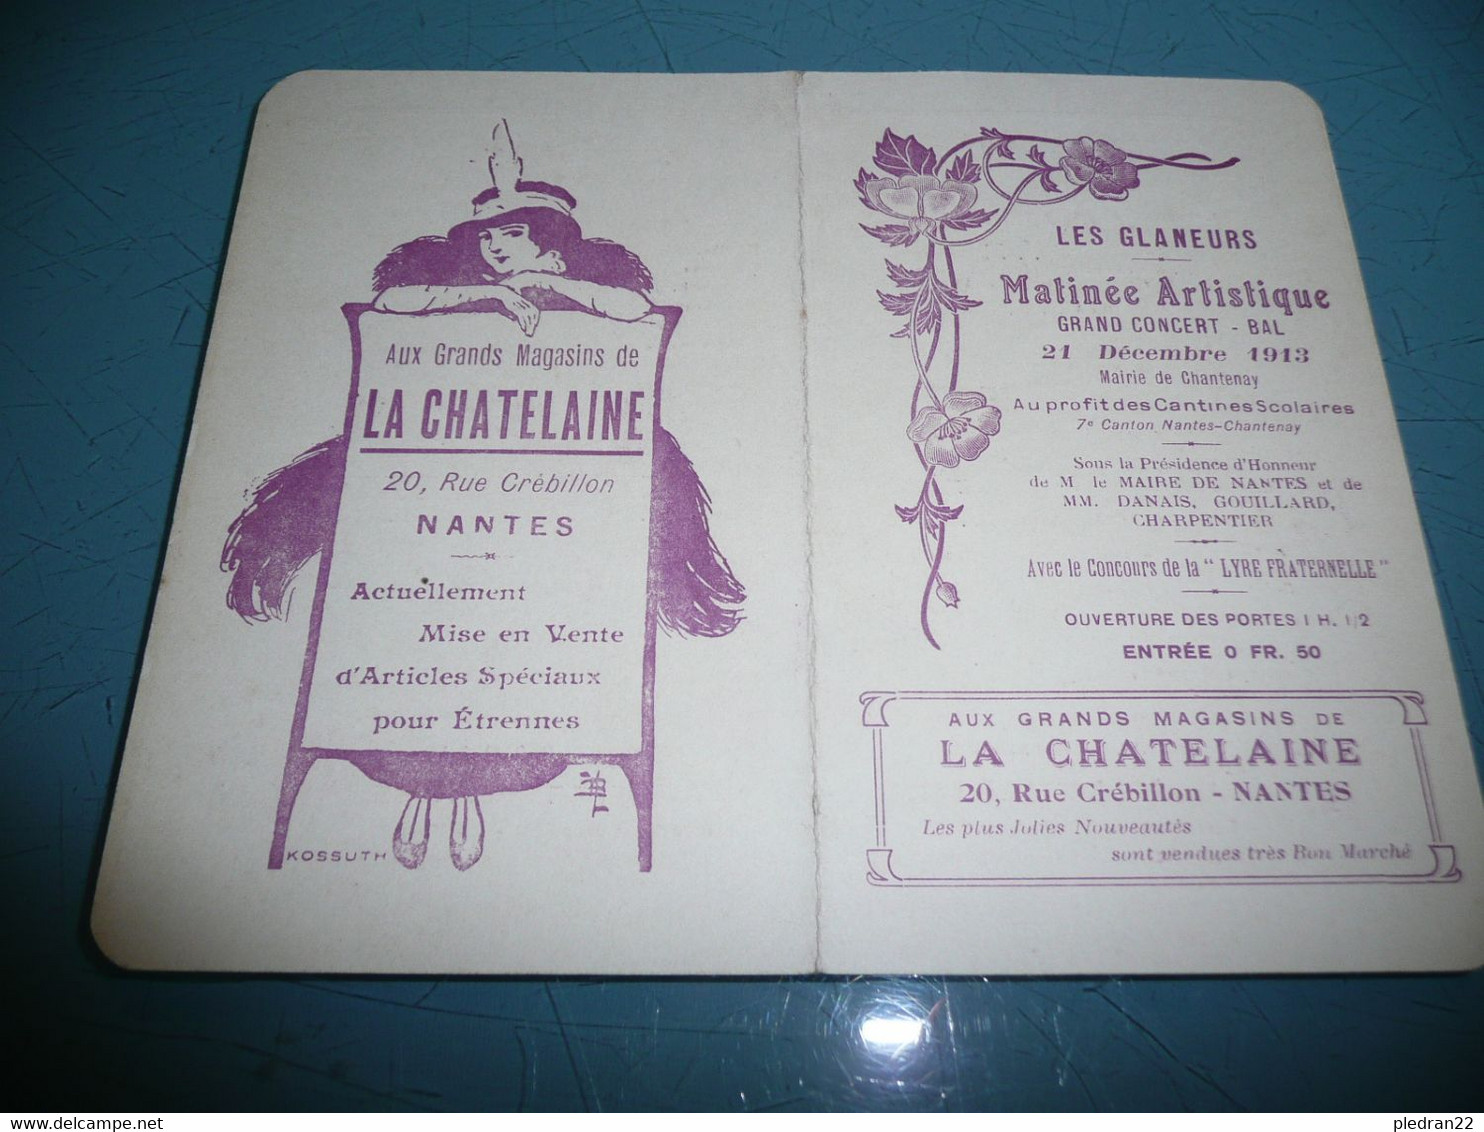 ANCIEN PROGRAMME MATINEE ARTISTIQUE LES GLANEURS CHANTENAY LOIRE INFERIEURE ATLANTIQUE CARNET DE BAL 1913 - Programma's